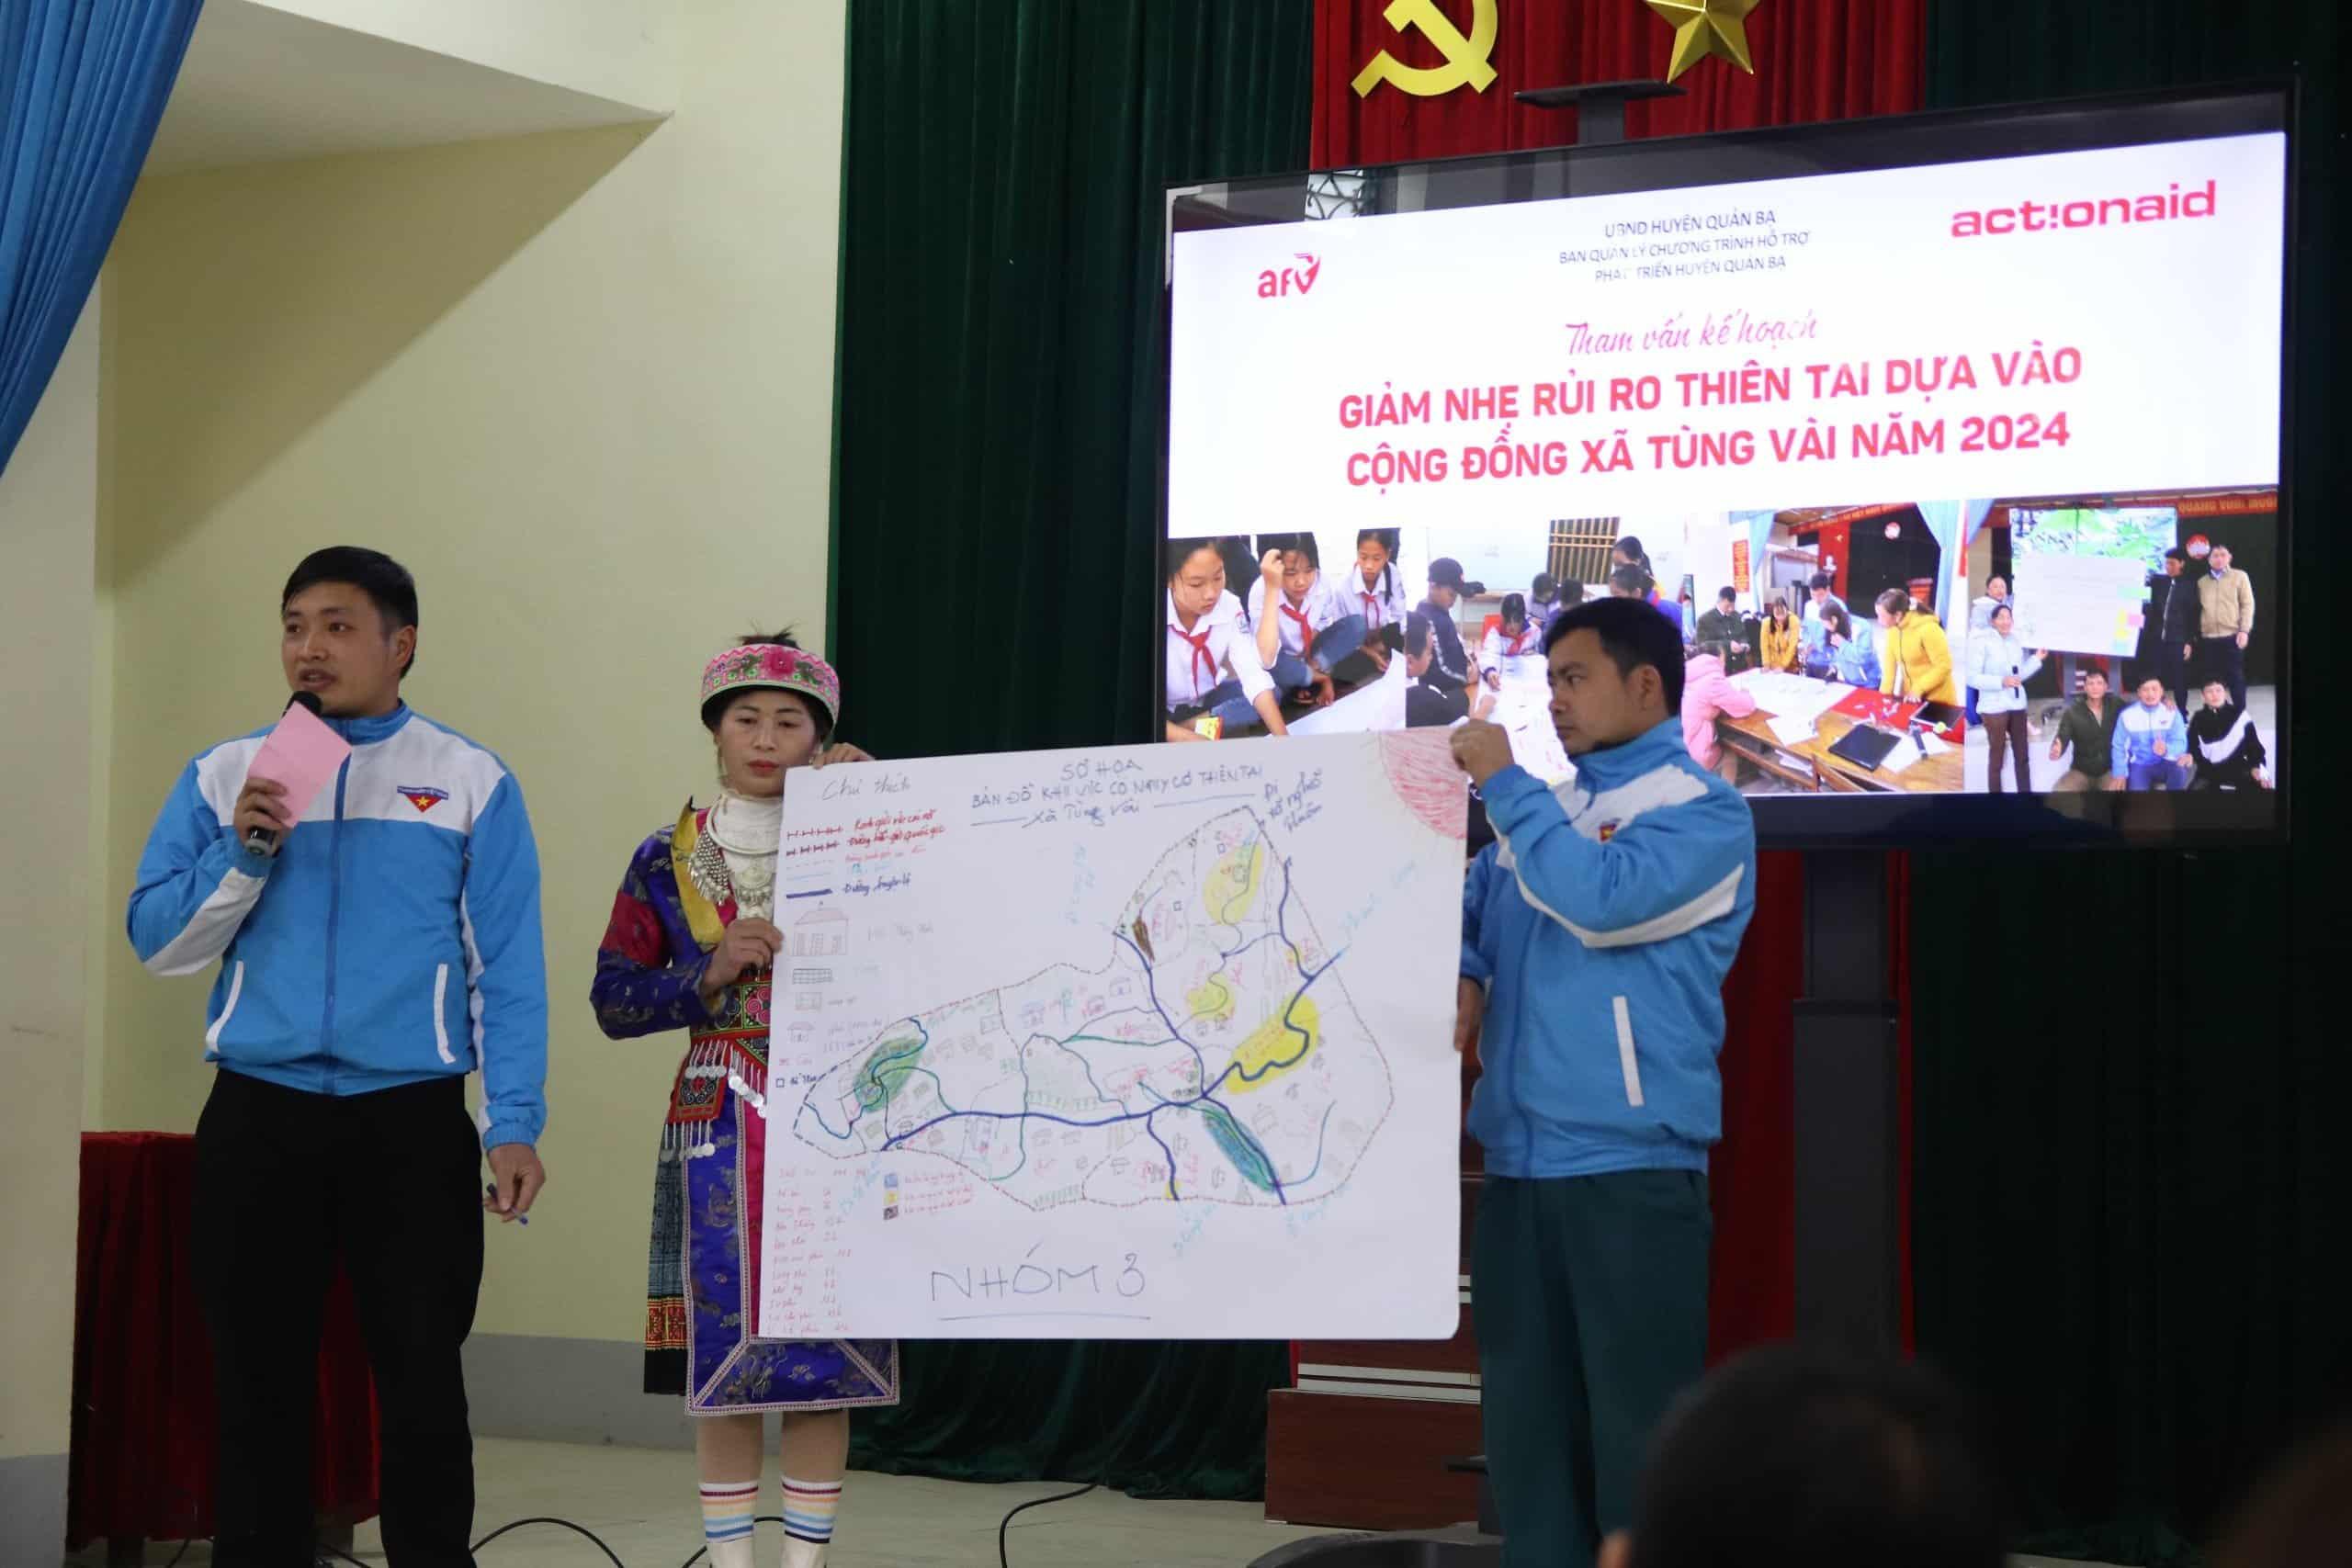 Tại hội nghị người dân cũng đã chia sẻ các kinh nghiệm hay để giảm nhẹ rủi ro thiên tai tại cộng đồng thôn Suối Vui và Bản Thăng, xã Tùng Vài, huyện Quản Bạ.